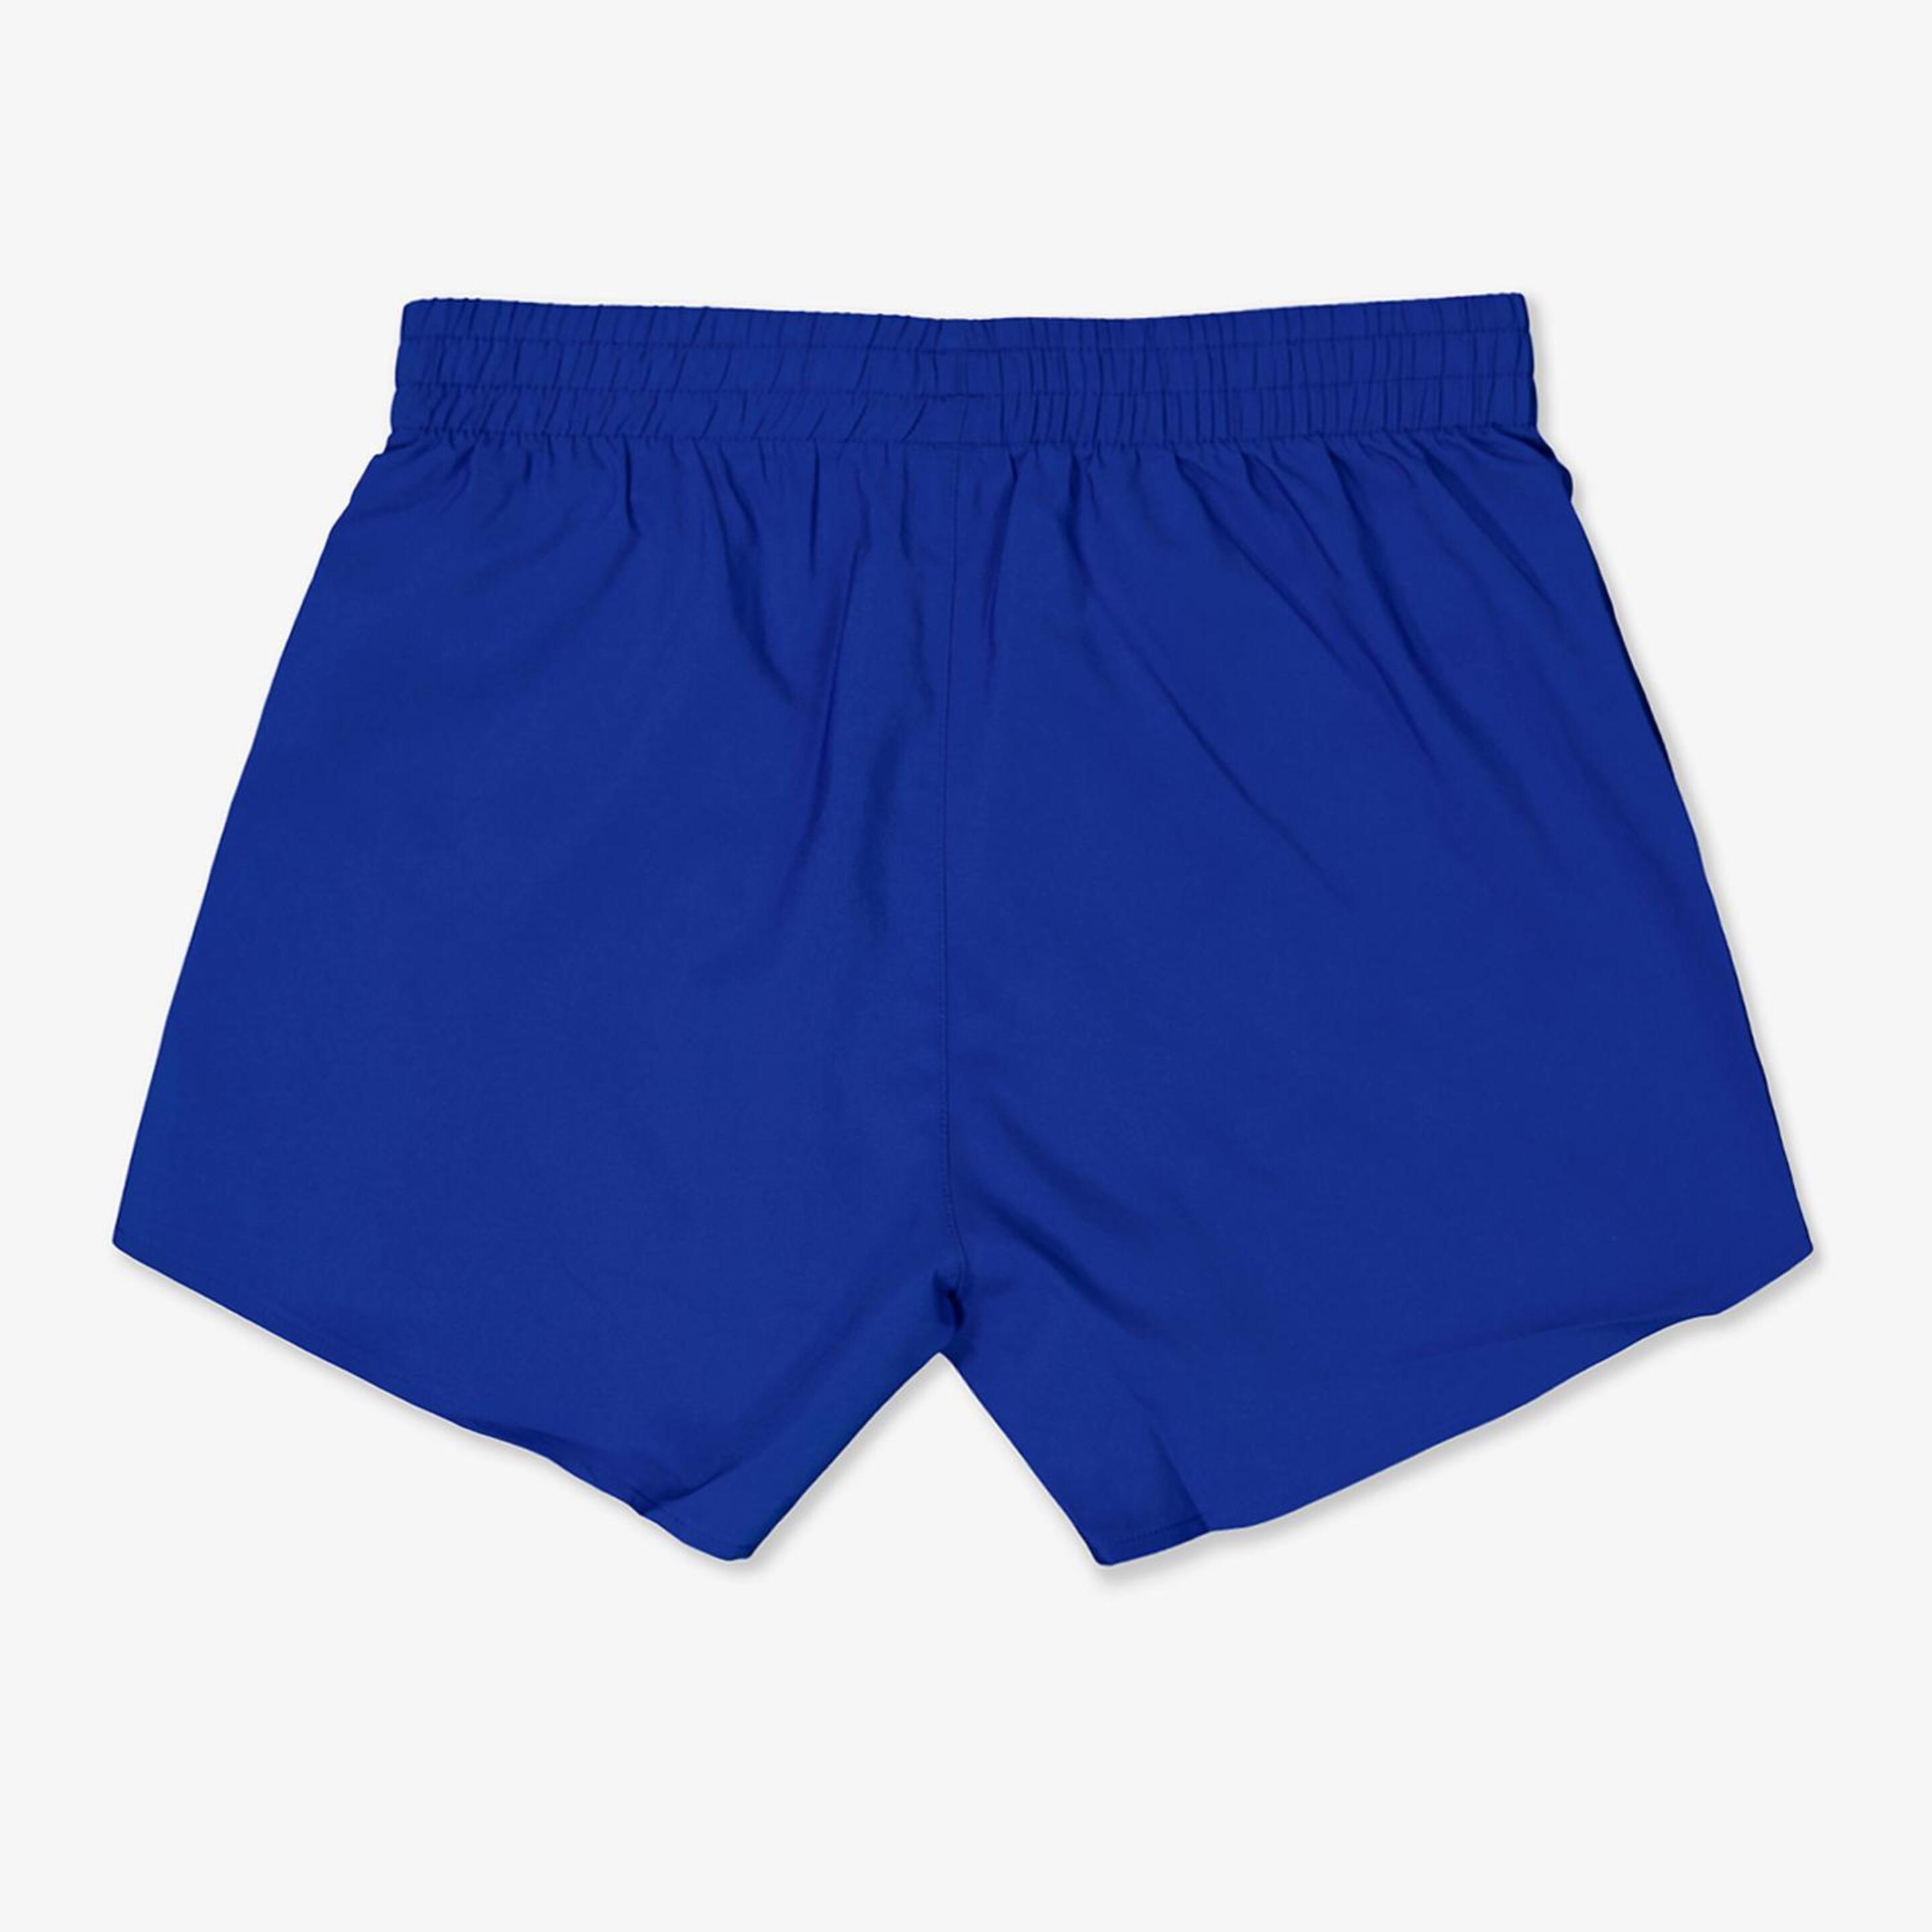 Pantalón adidas - Azul - Pantalón Corto Running Niño